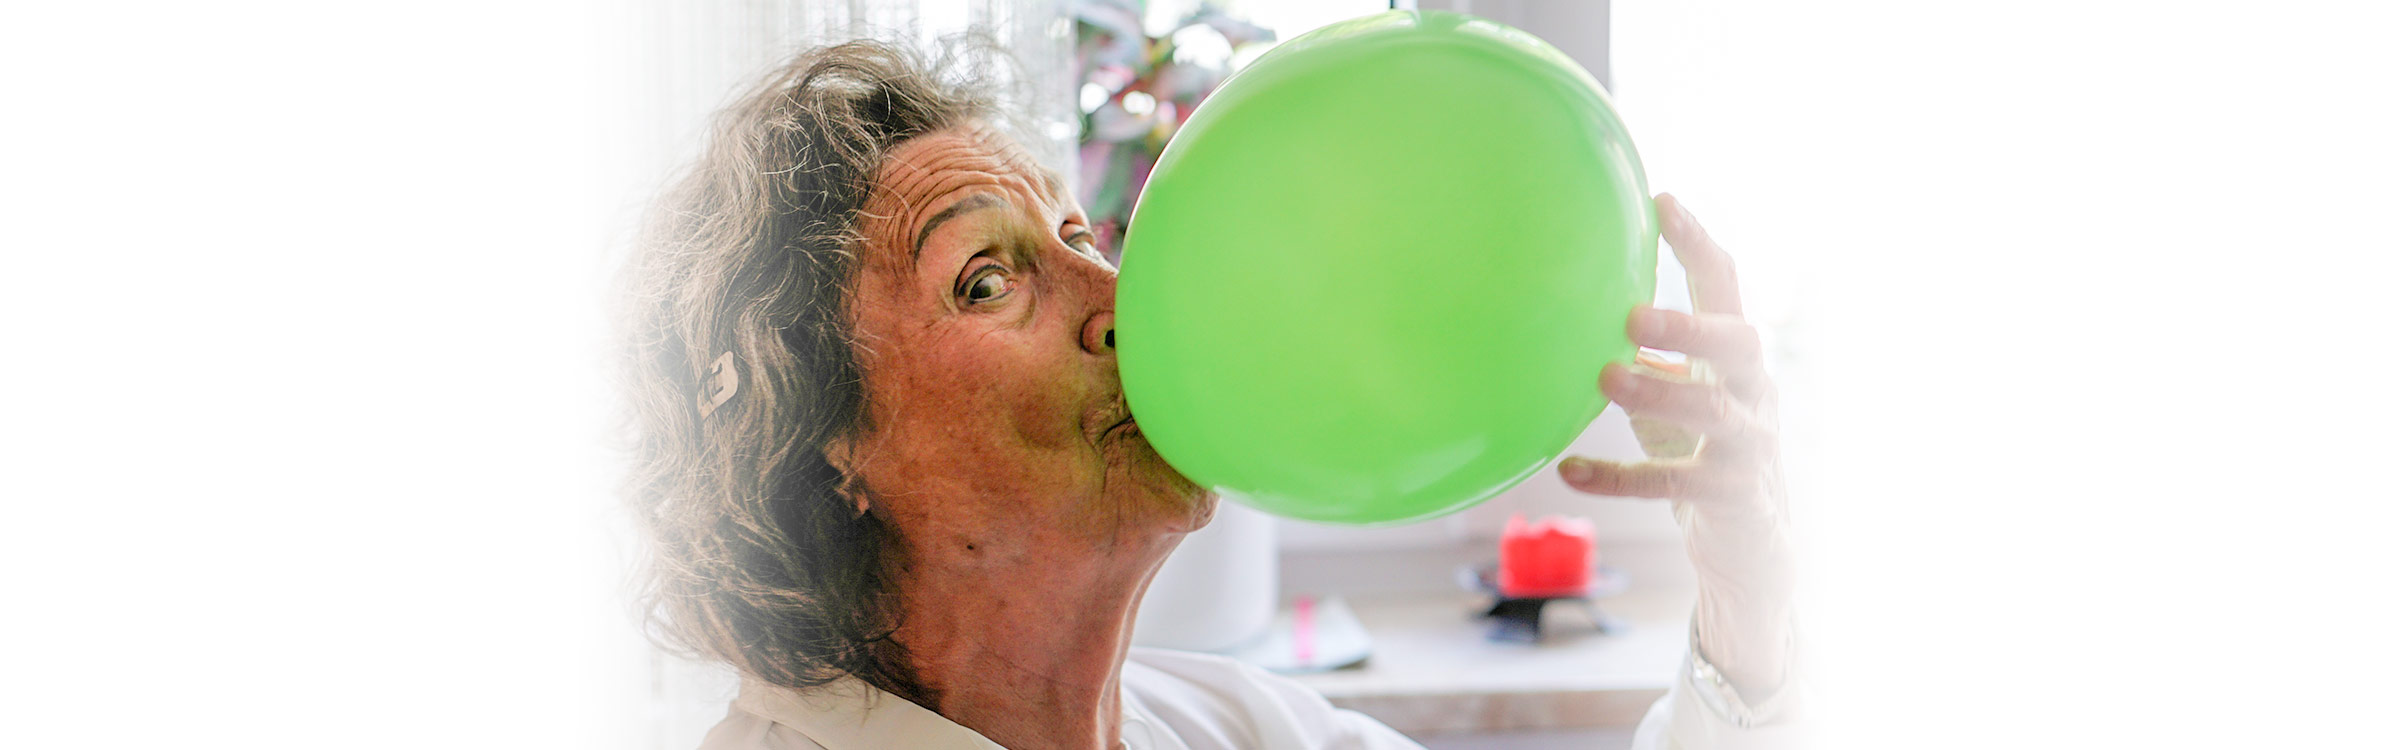 Patientin von Bunz mobile Physio trainiert zu Hause Ihre Atemmuskulatur mithilfe eines Luftballons.